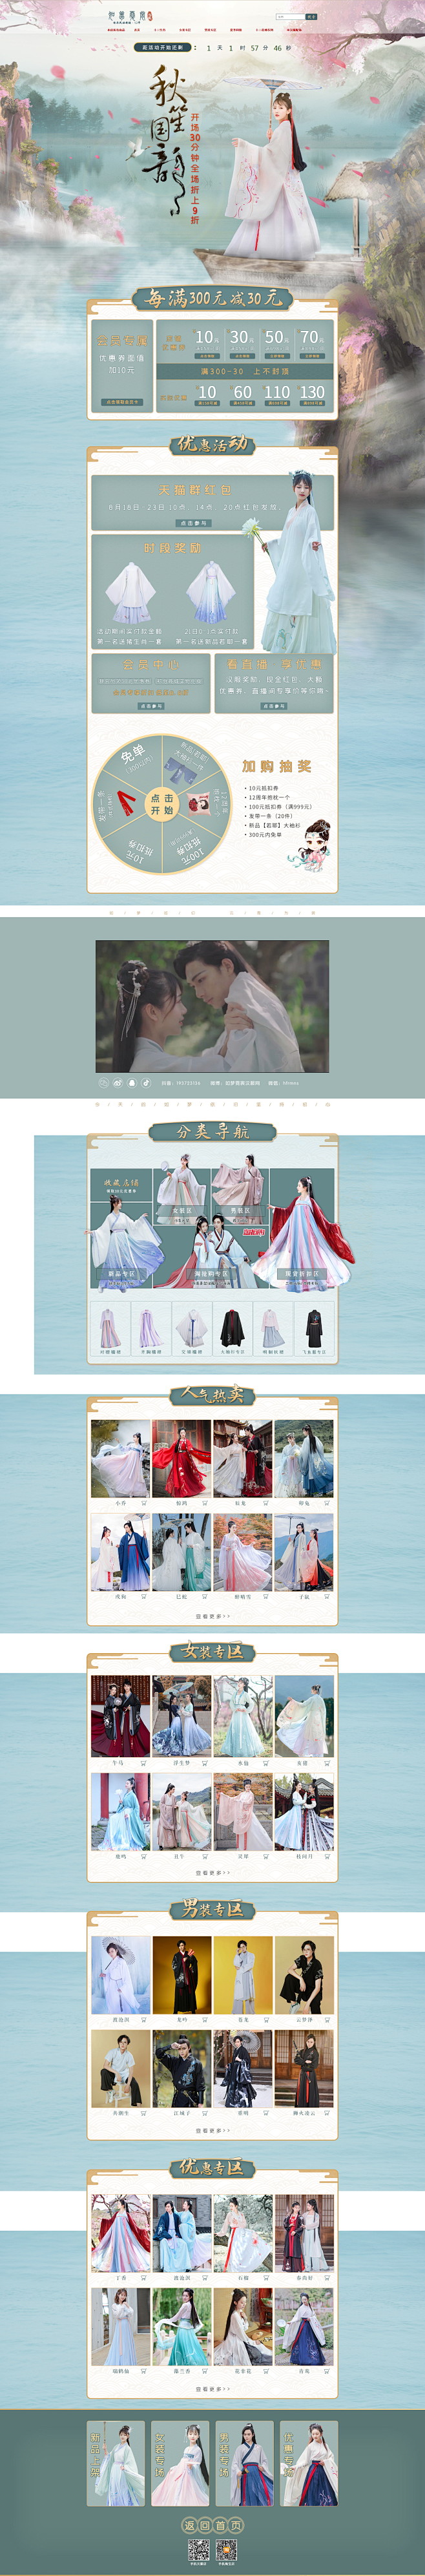 女装服饰天猫店铺首页活动主题页面设计 如...